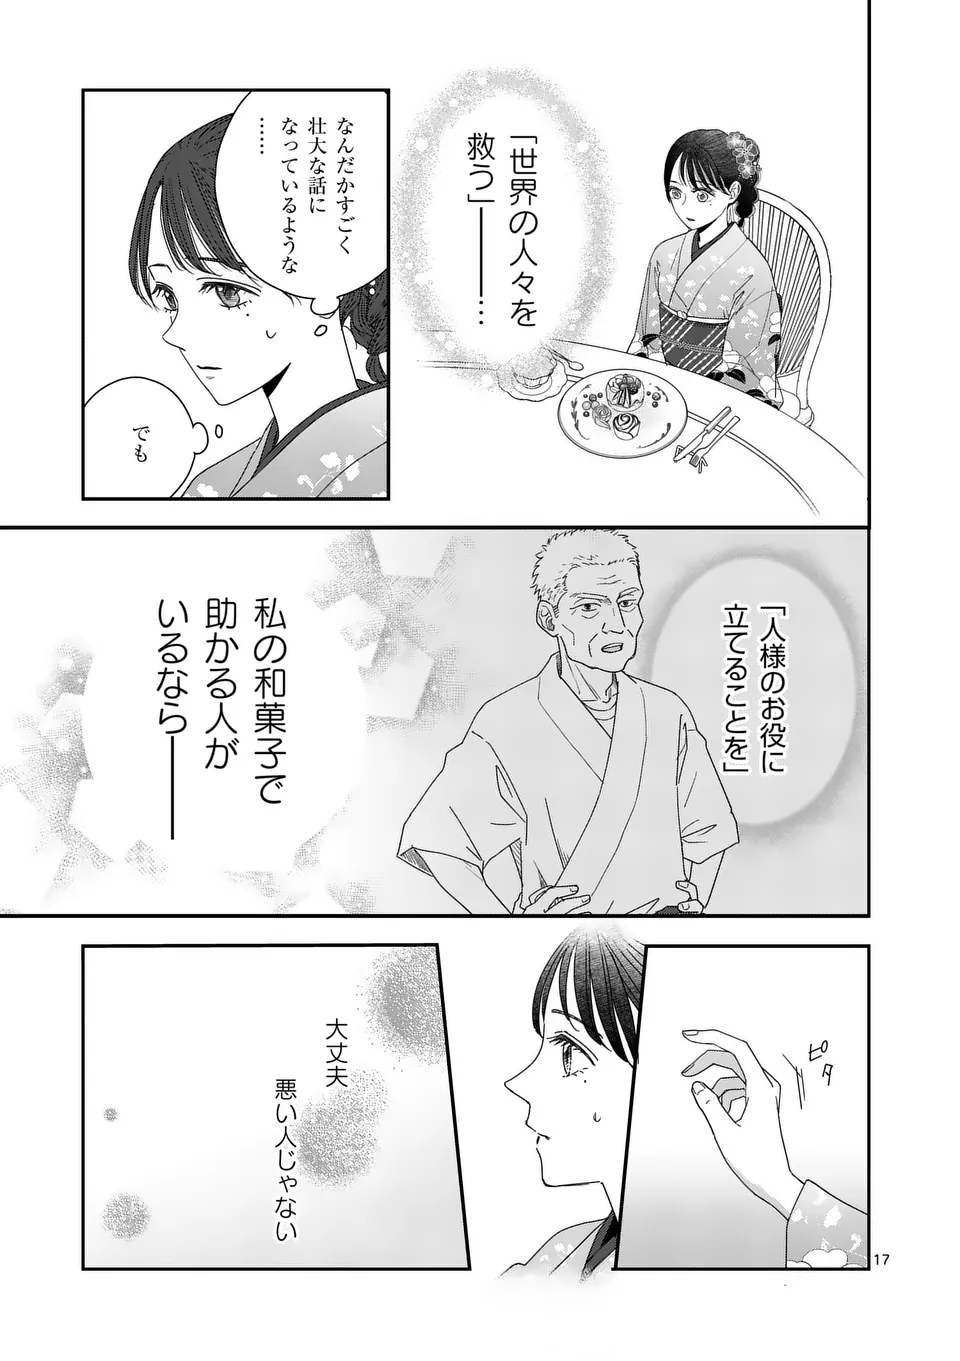 Makizoe de Isekai ni Yobidasareta no de, Sekai Kanmushi shite Wagashi Tsukurimasu - Chapter 8.2 - Page 1